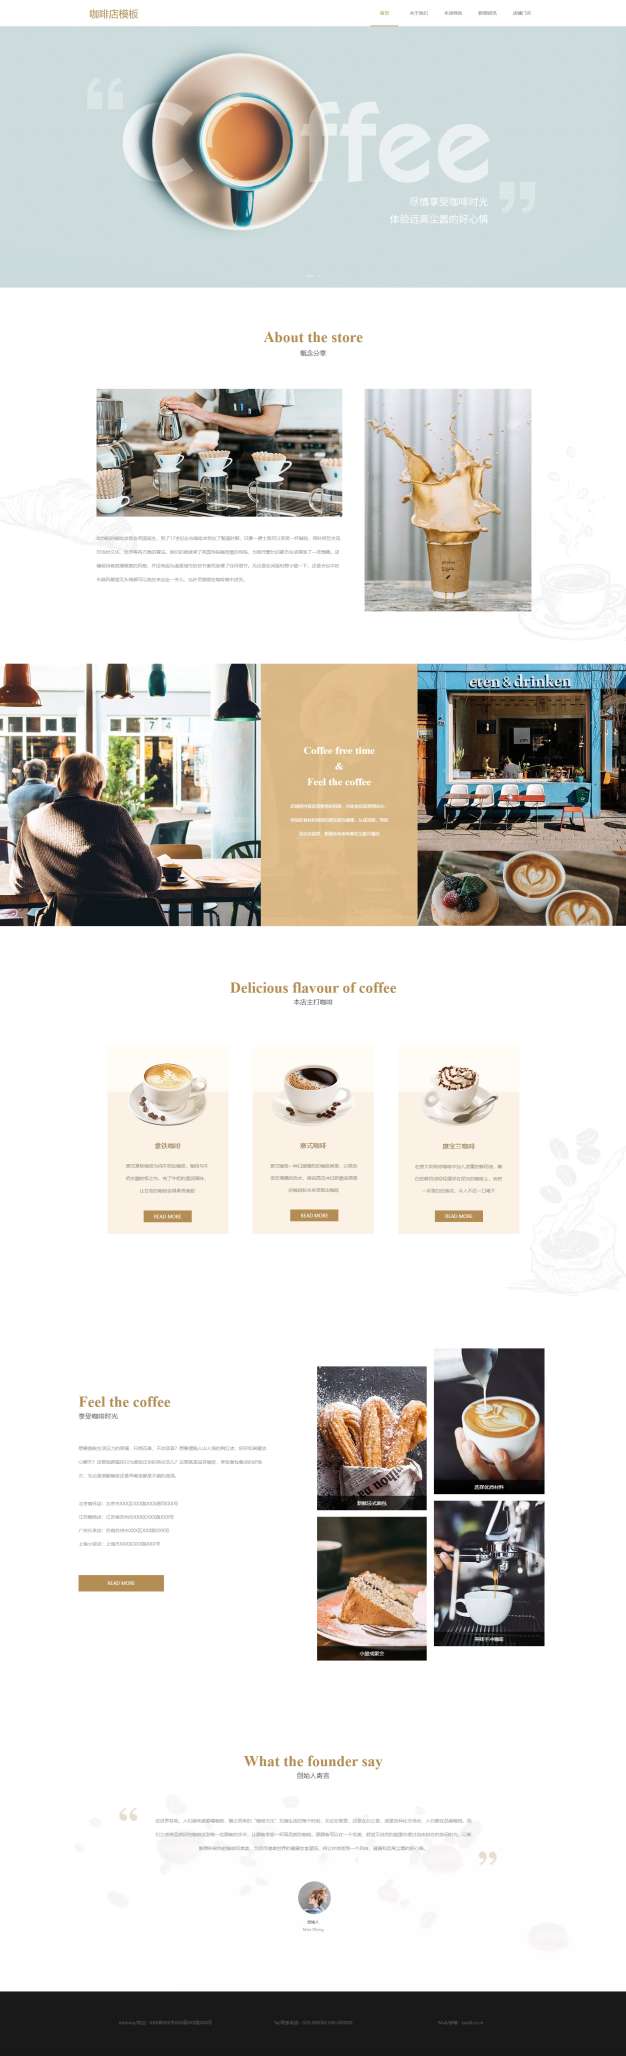 时尚咖啡店下午茶网站模板